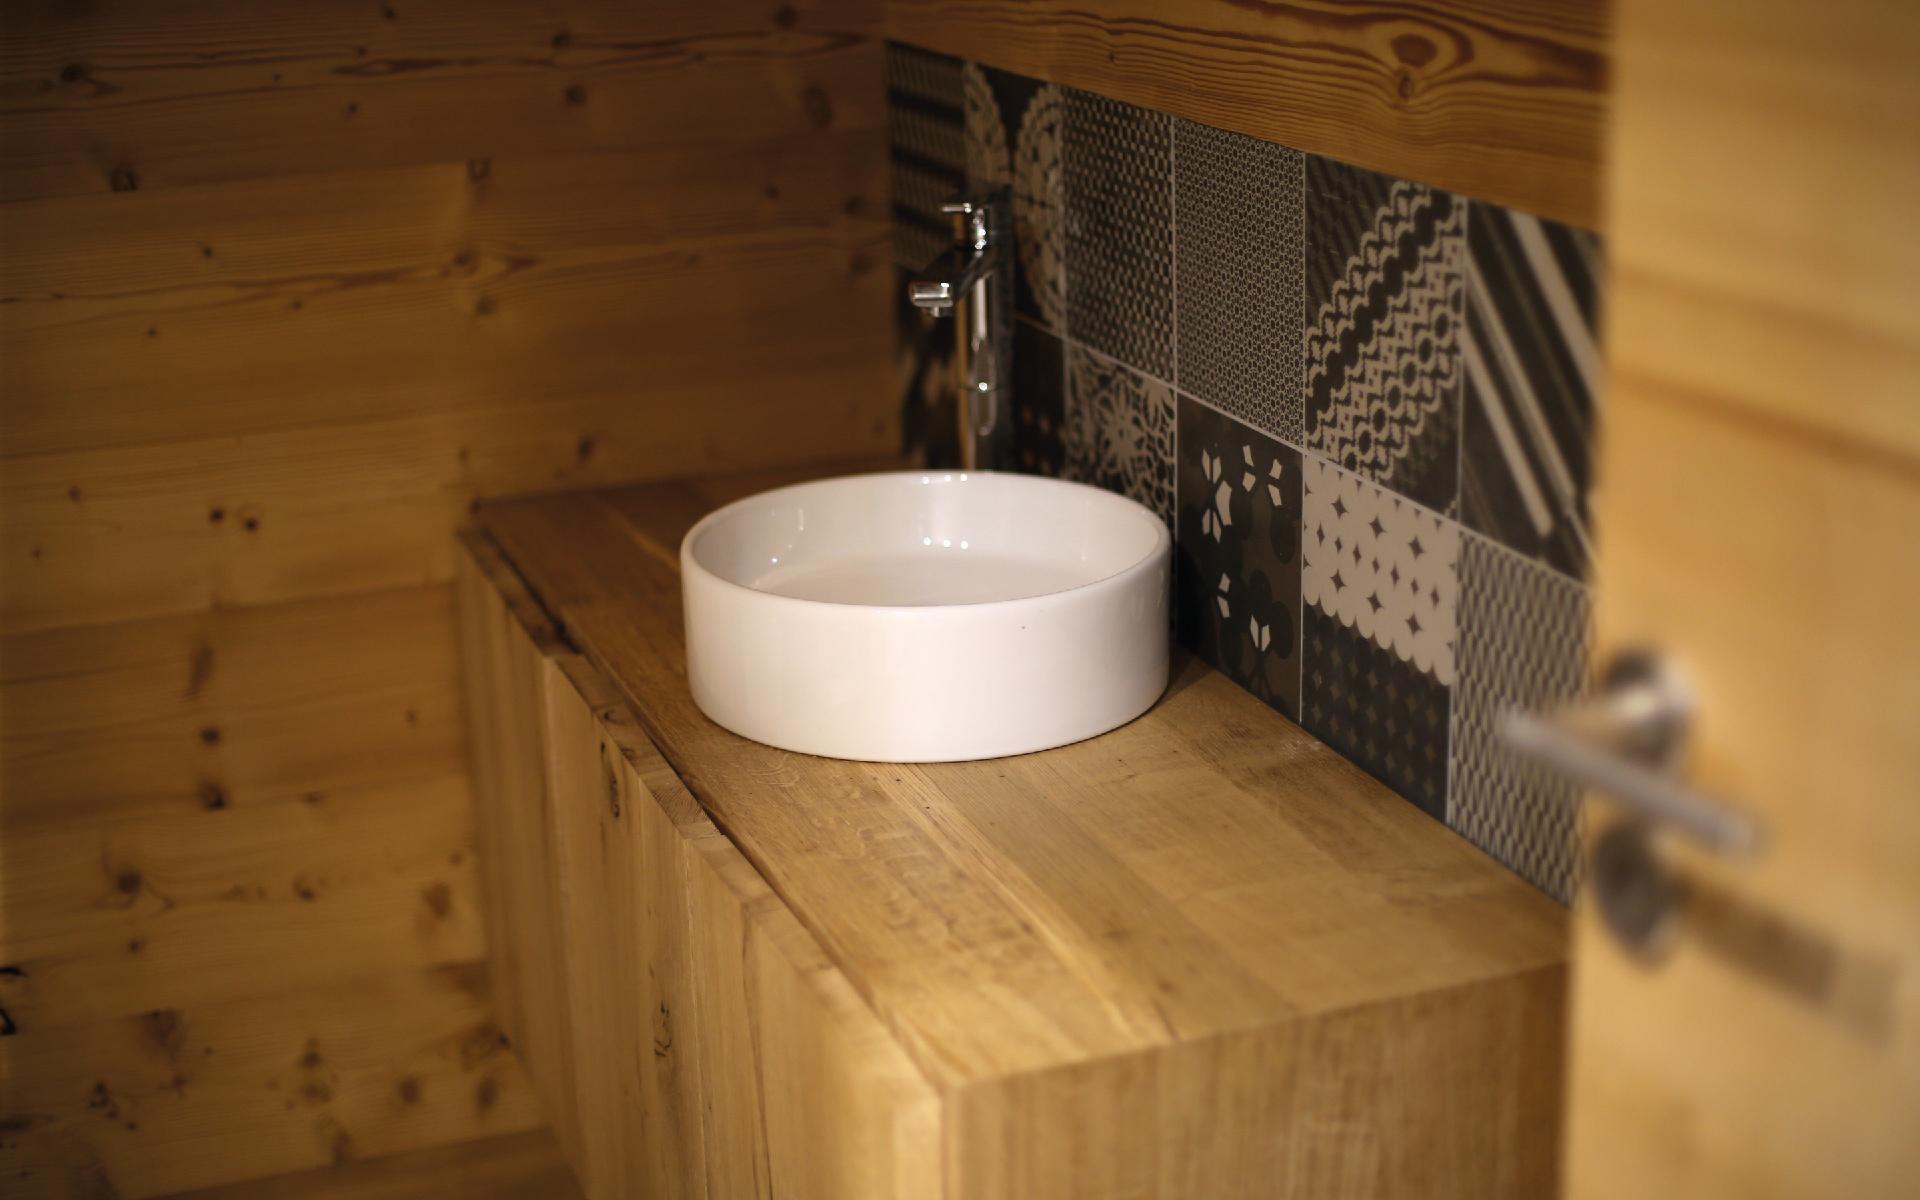 Vasque de la salle de bain en porcelaine sobre et élégante sur bois massif.